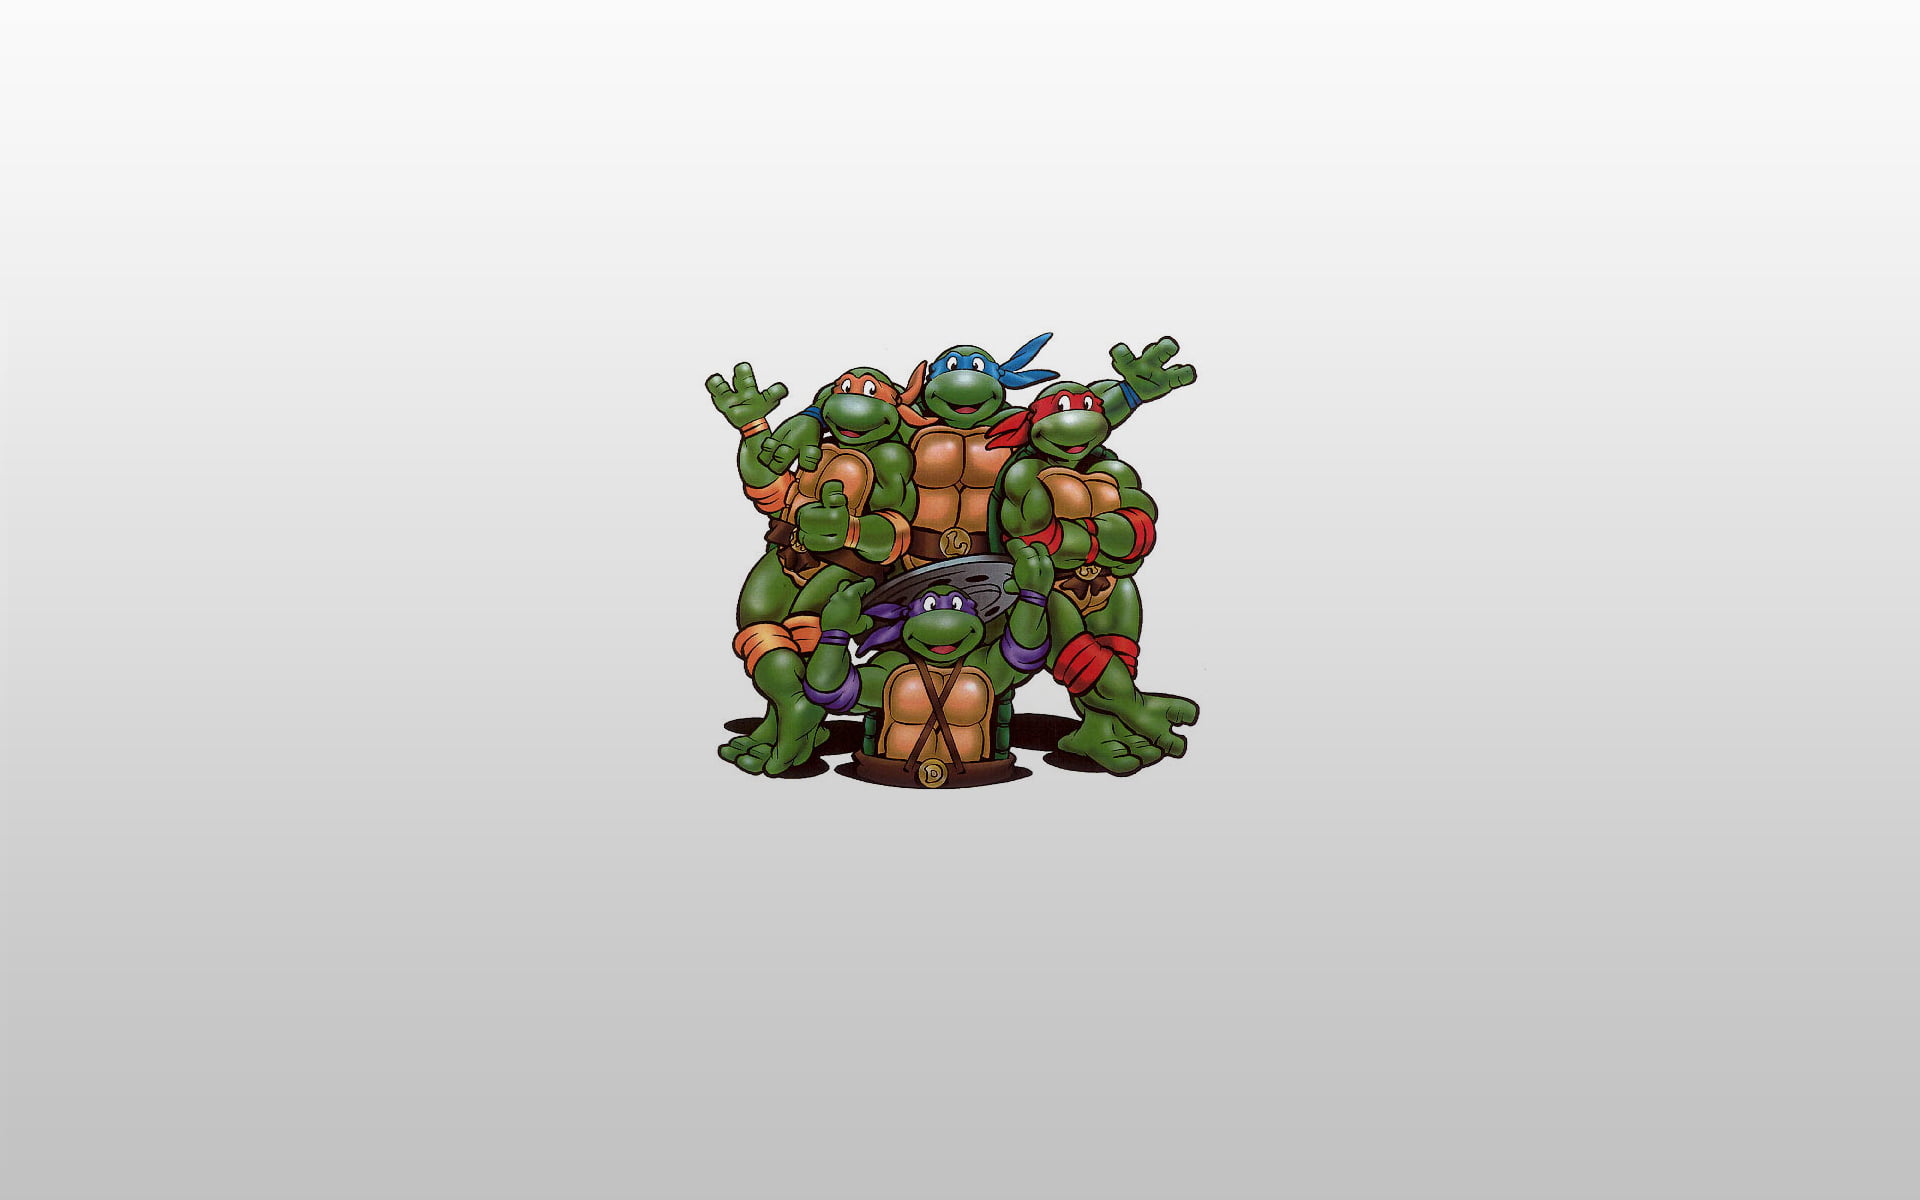 TMNT digital wallpaper, Raphael, Leonardo, Donatello, Teenage Mutant Ninja Turtles